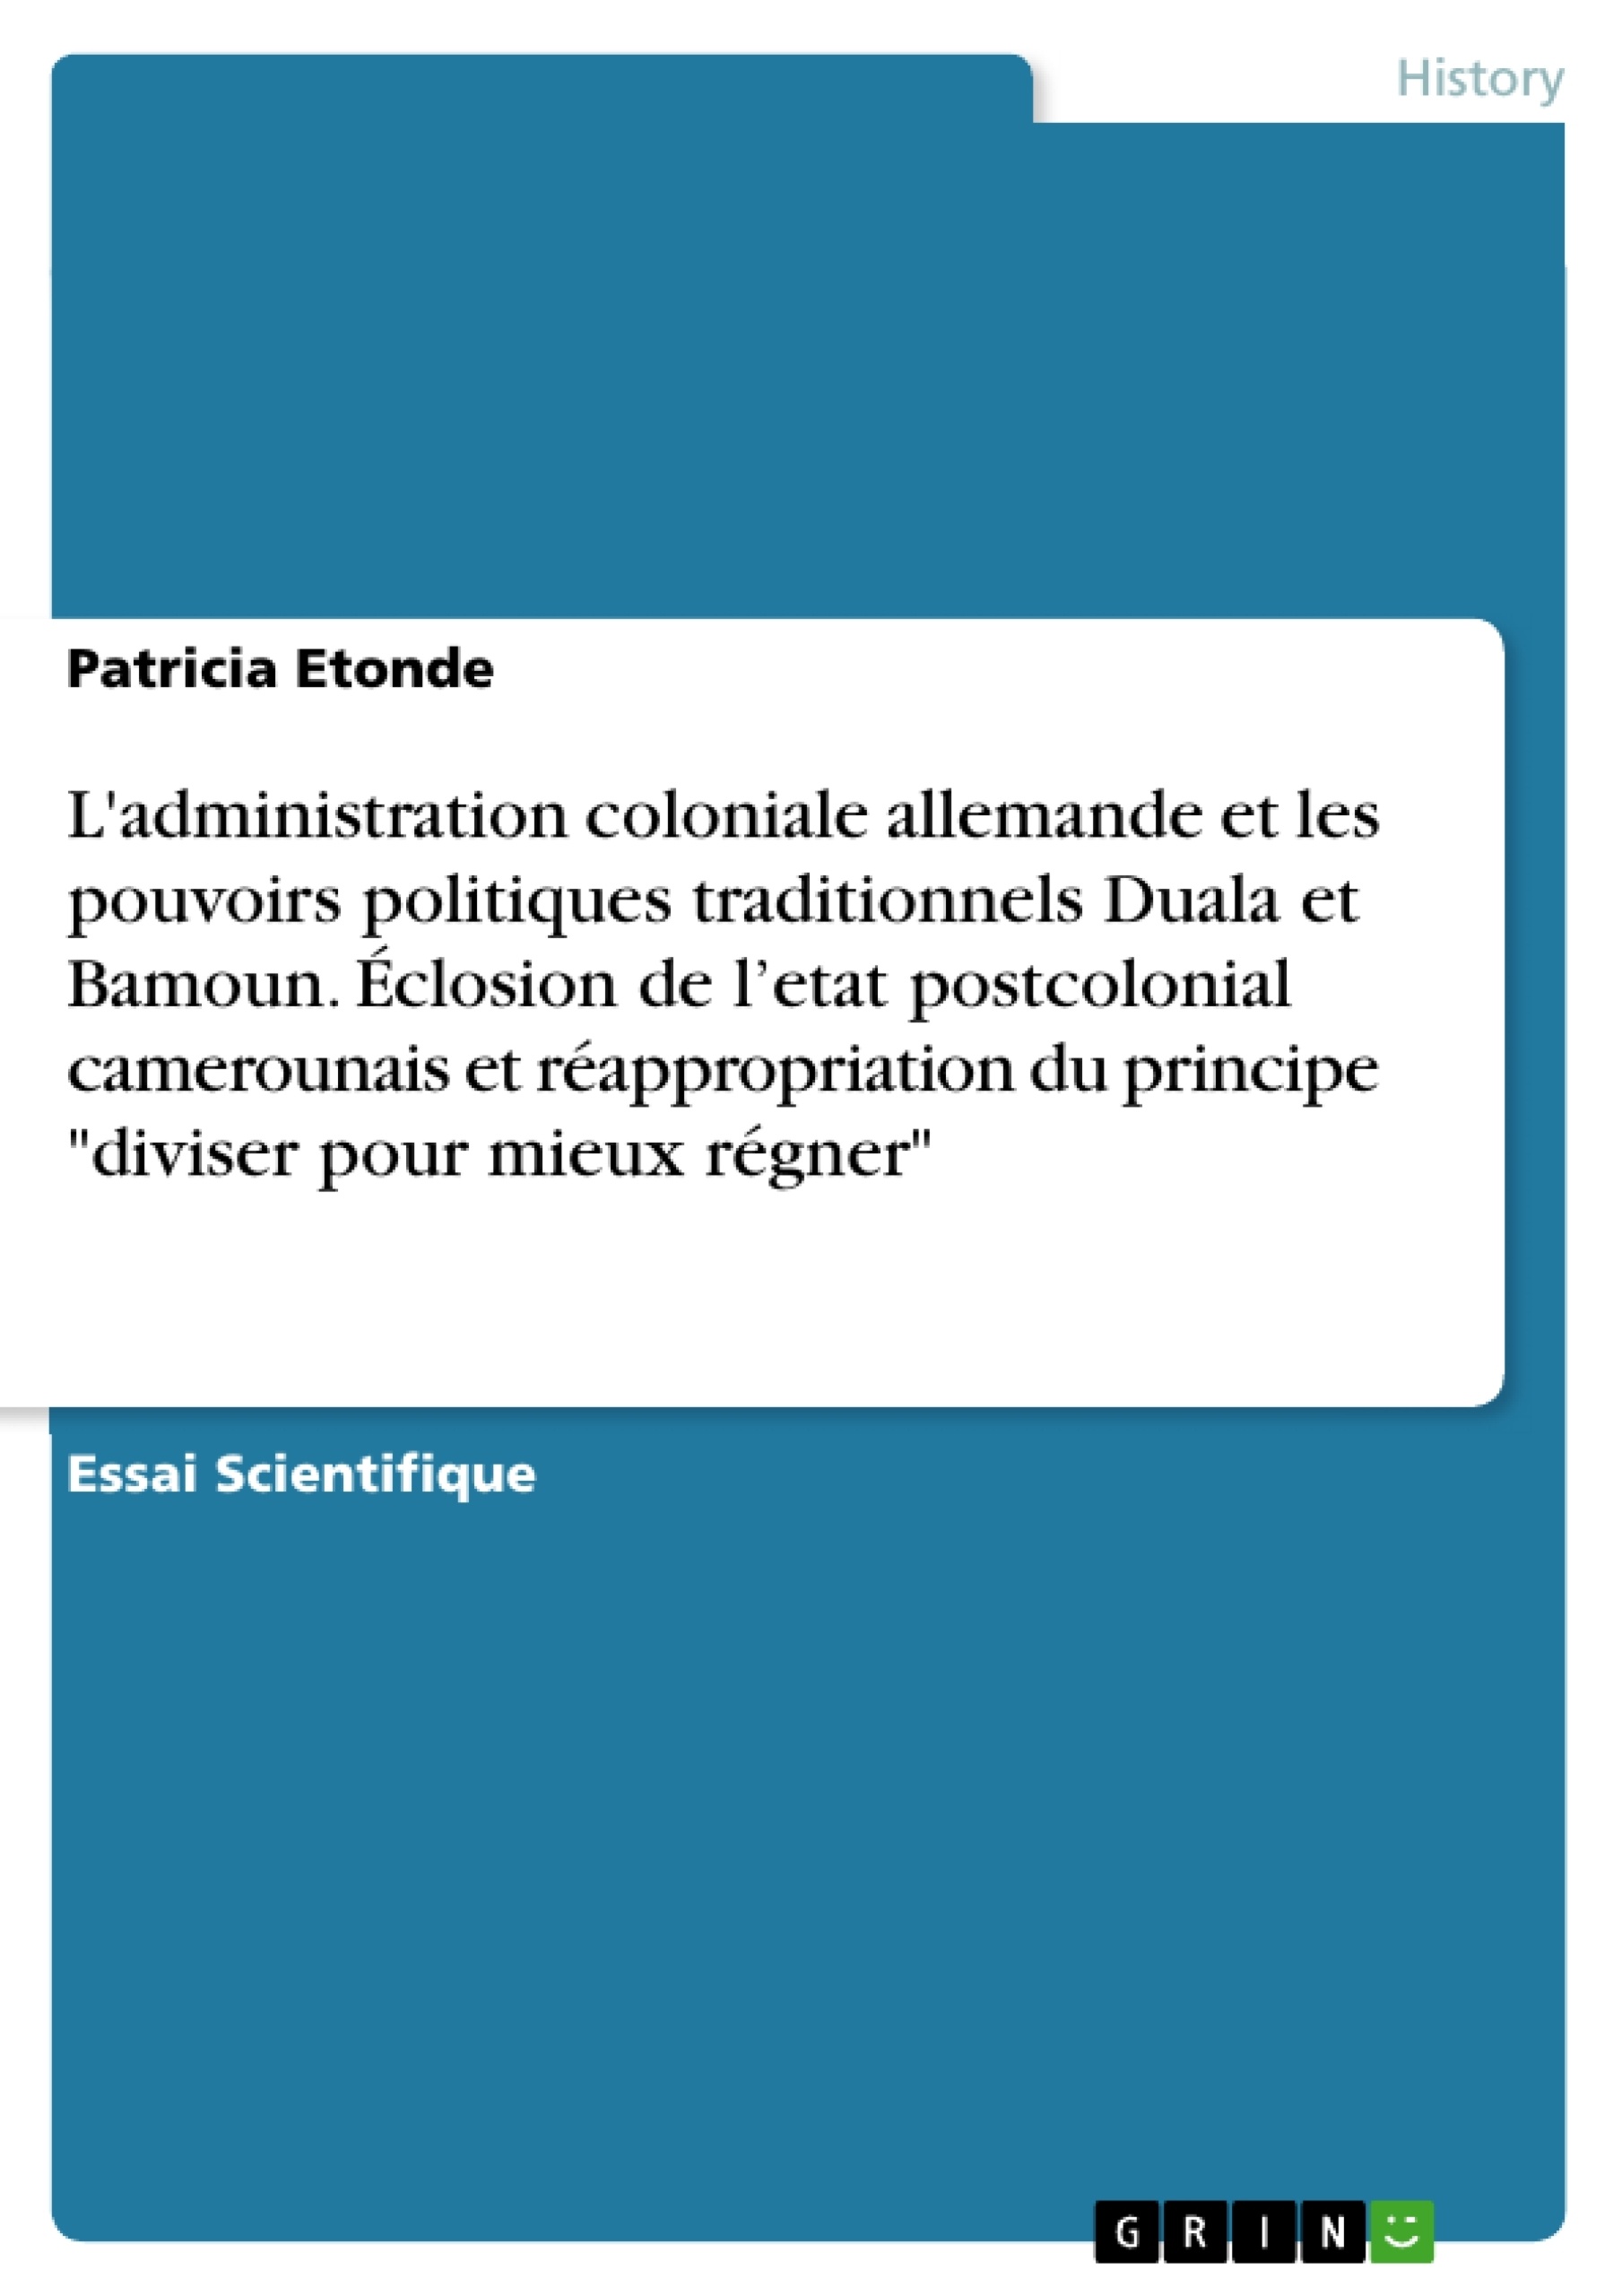 Titre: L'administration coloniale allemande et les pouvoirs politiques traditionnels Duala et Bamoun. Éclosion de l’etat postcolonial camerounais et réappropriation du principe "diviser pour mieux régner"